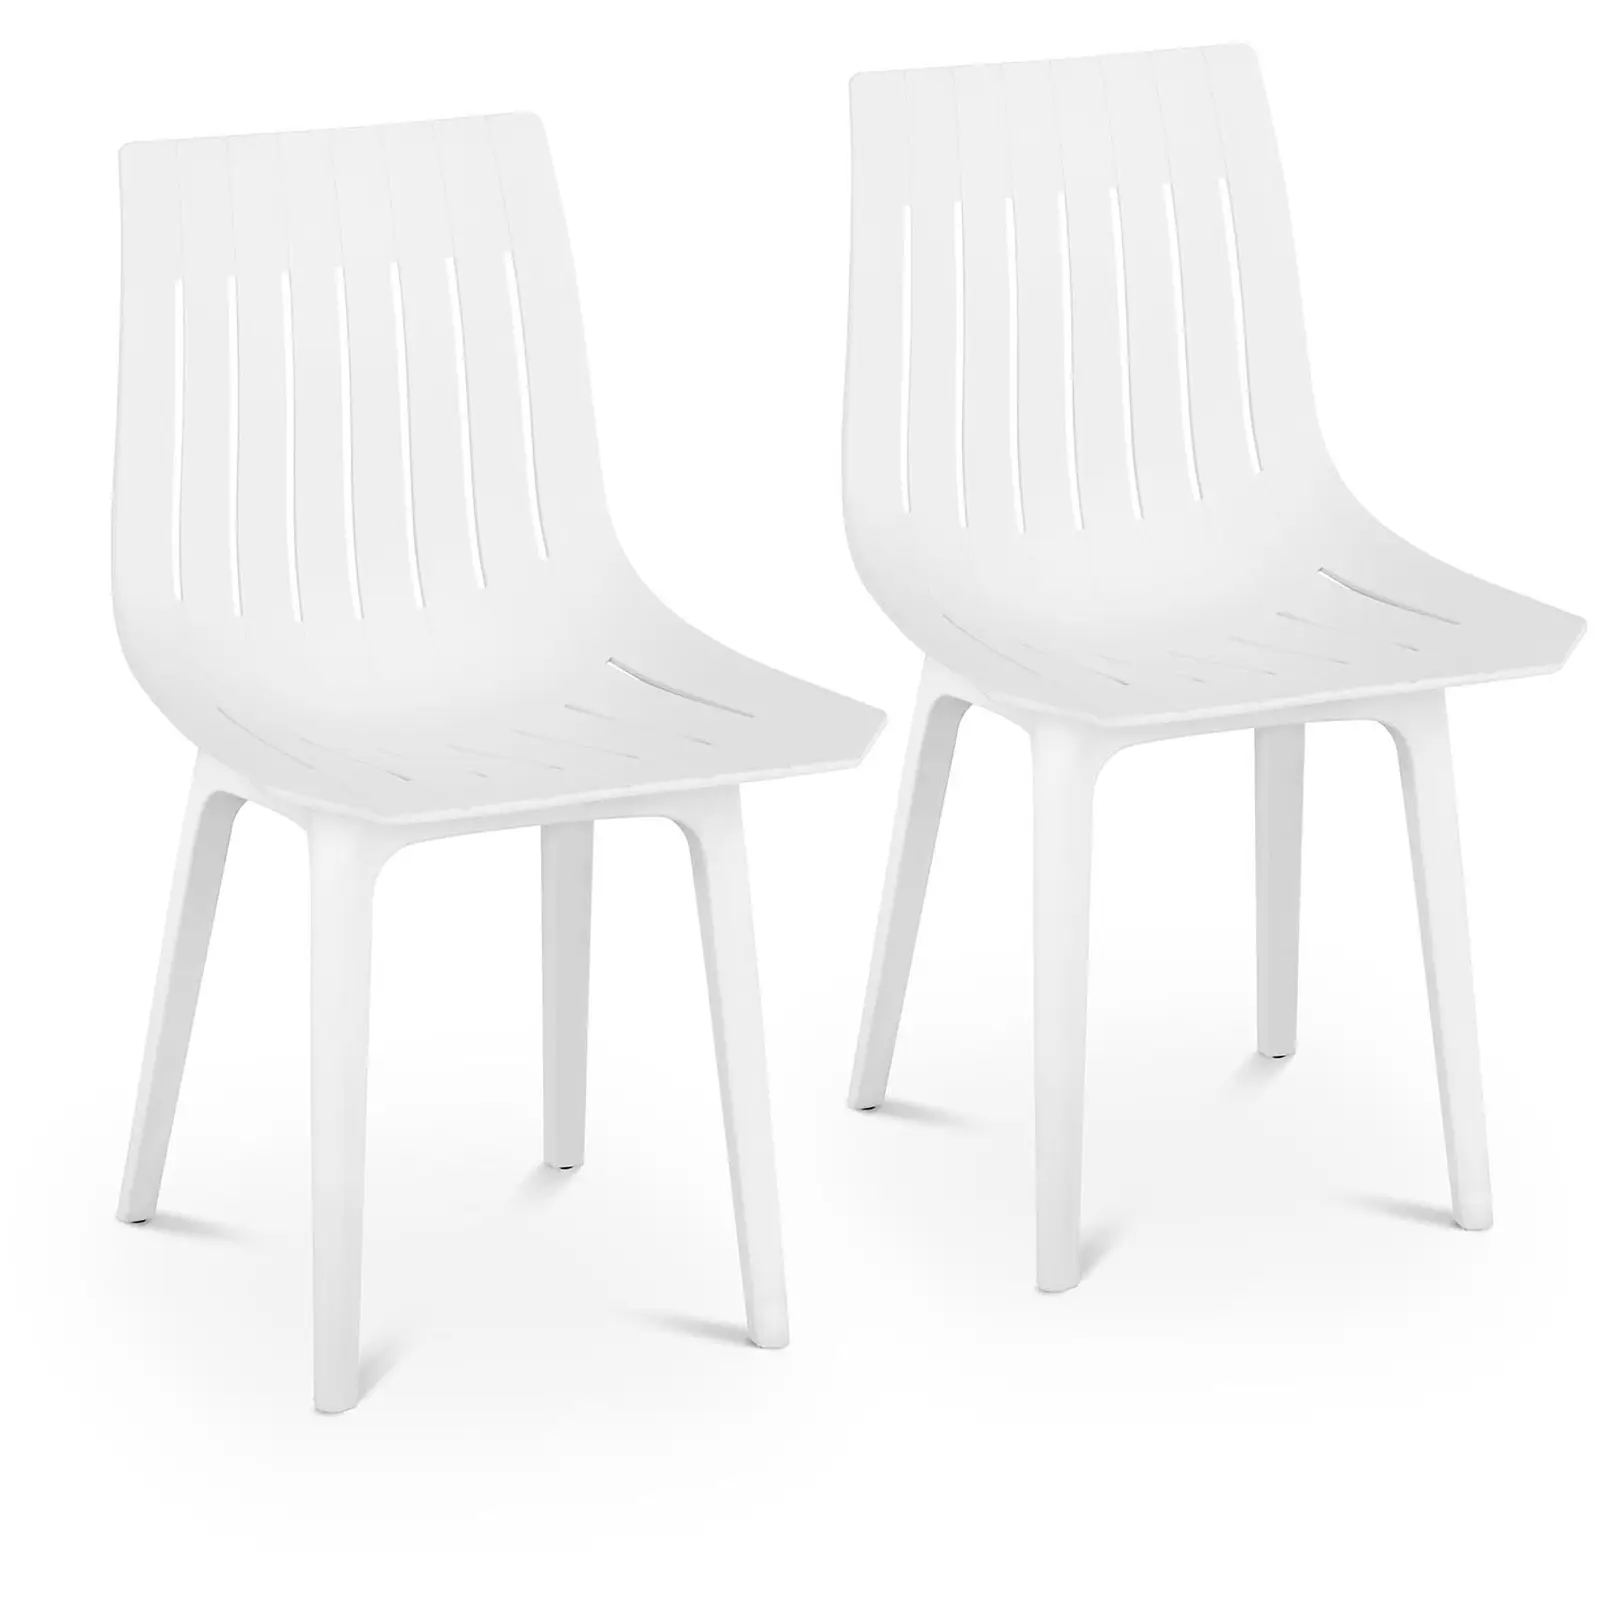 Outlet Krzesło - białe - do 150 kg - 2 szt.